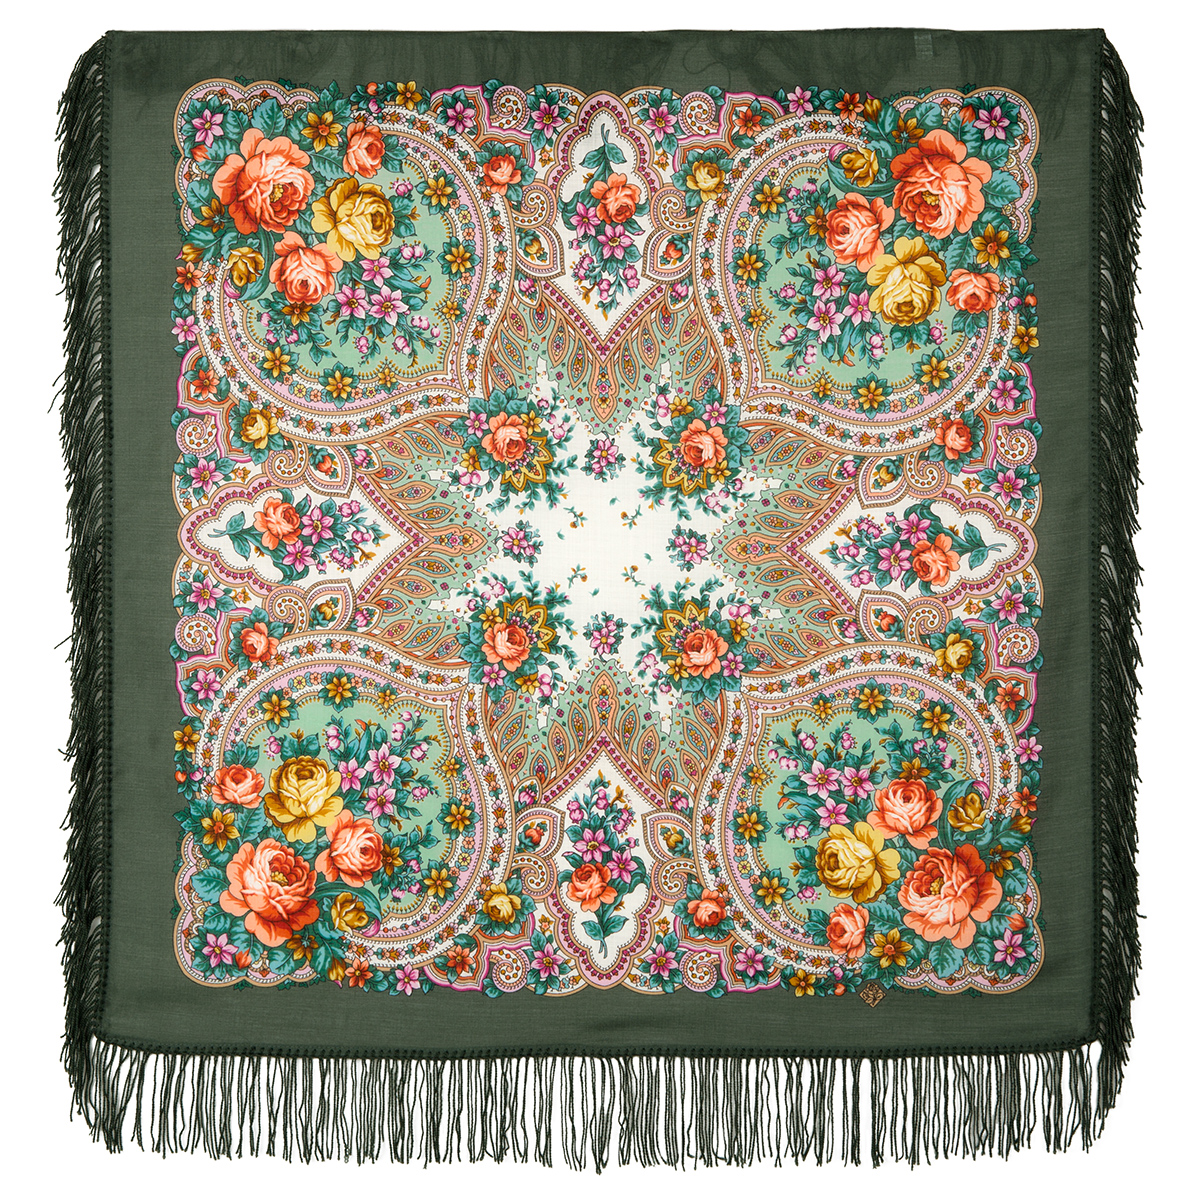 Платок женский Павловопосадский платок 1706 зеленый/оливковый/оранжевый, 89х89 см